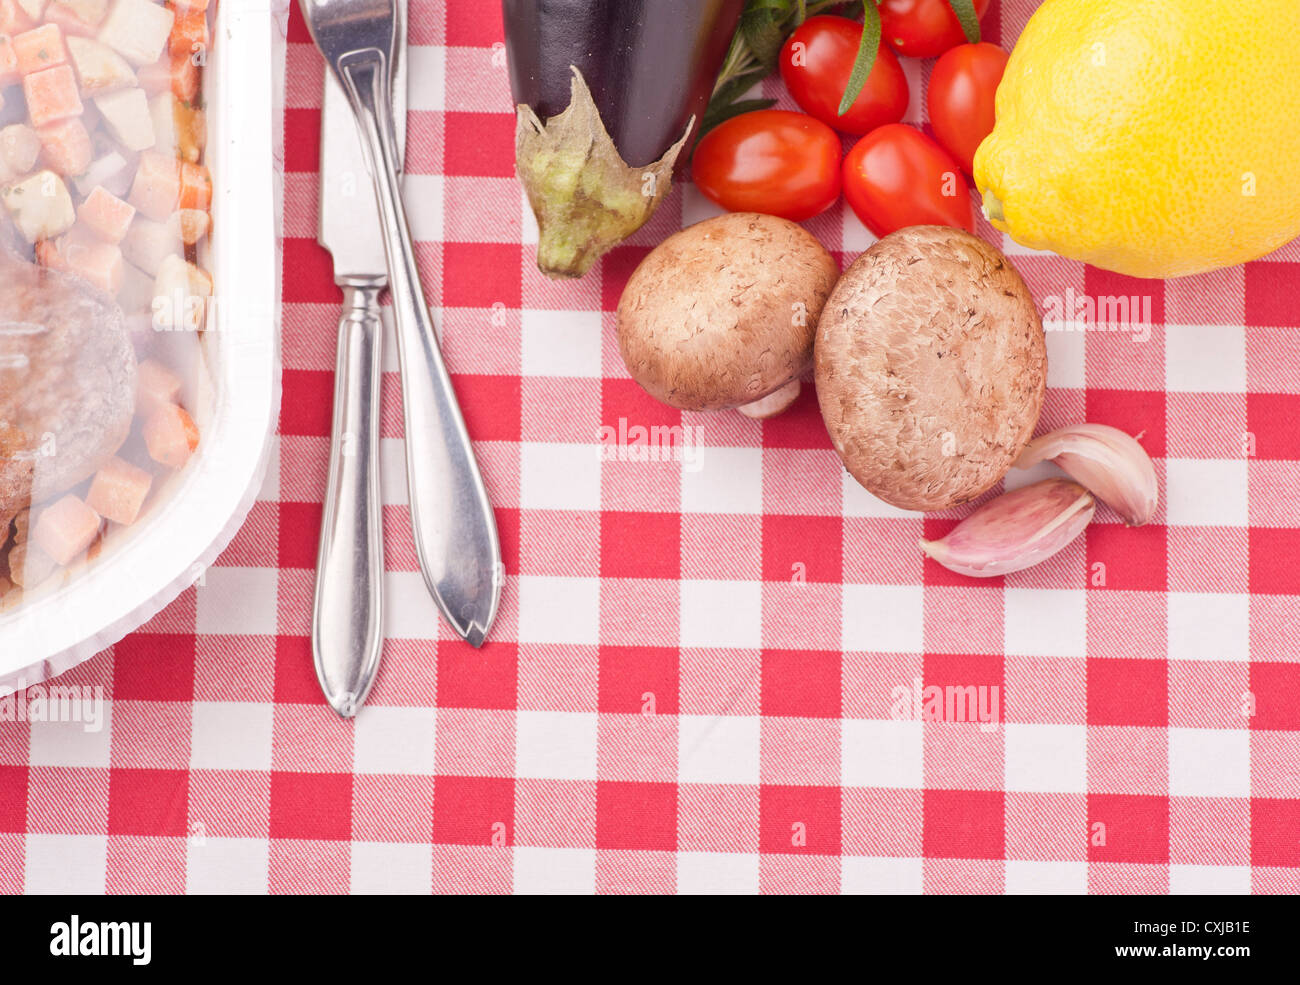 Kontrastierende Essen, Wahl zwischen frischem gesunden Gemüse und Mikrowellen-Mahlzeit Stockfoto